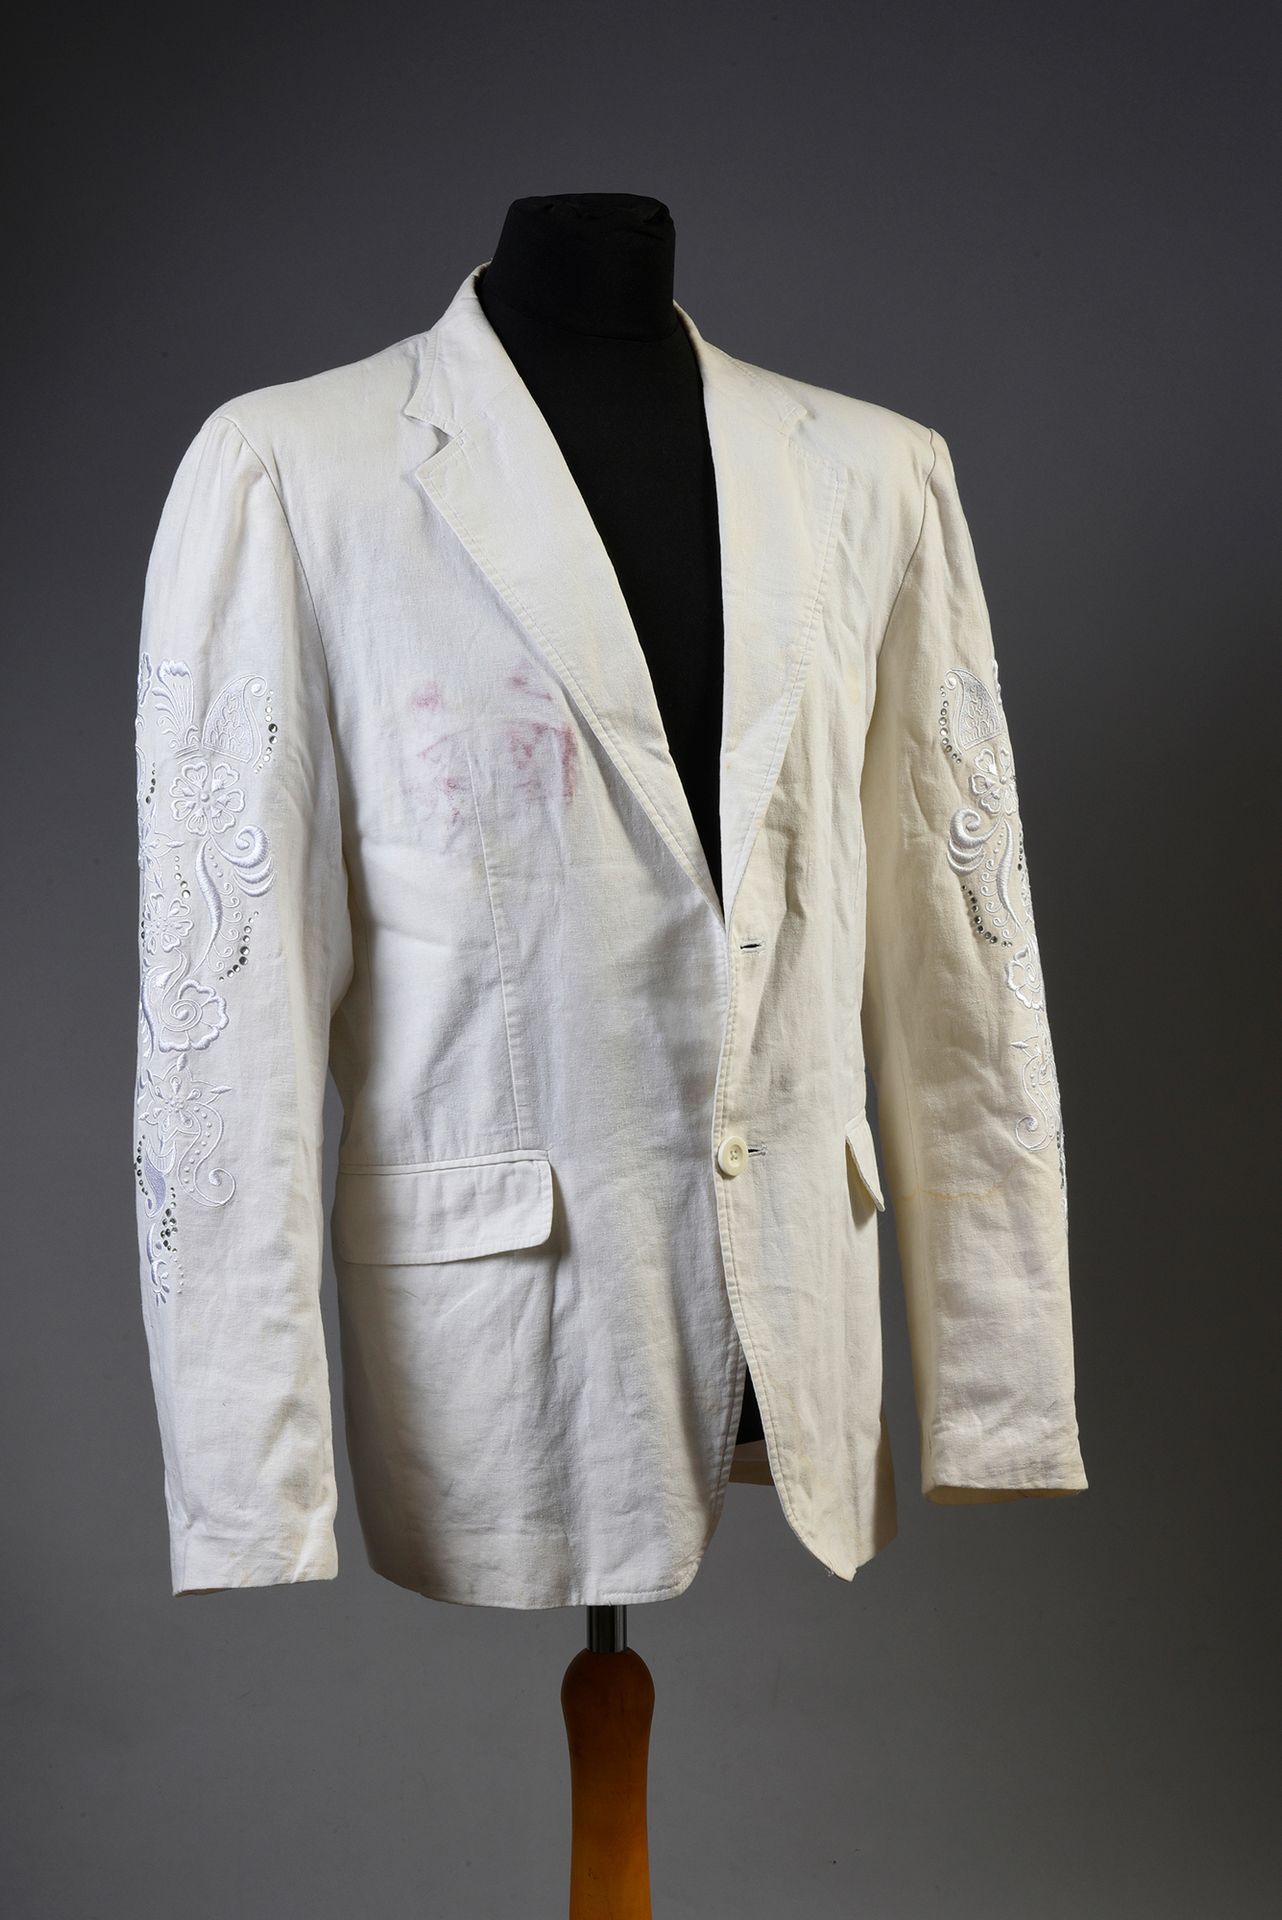 Null JOHNNY HALLYDAY: 1 weiße Baumwolljacke der Marke "RG 512", die von Johnny H&hellip;